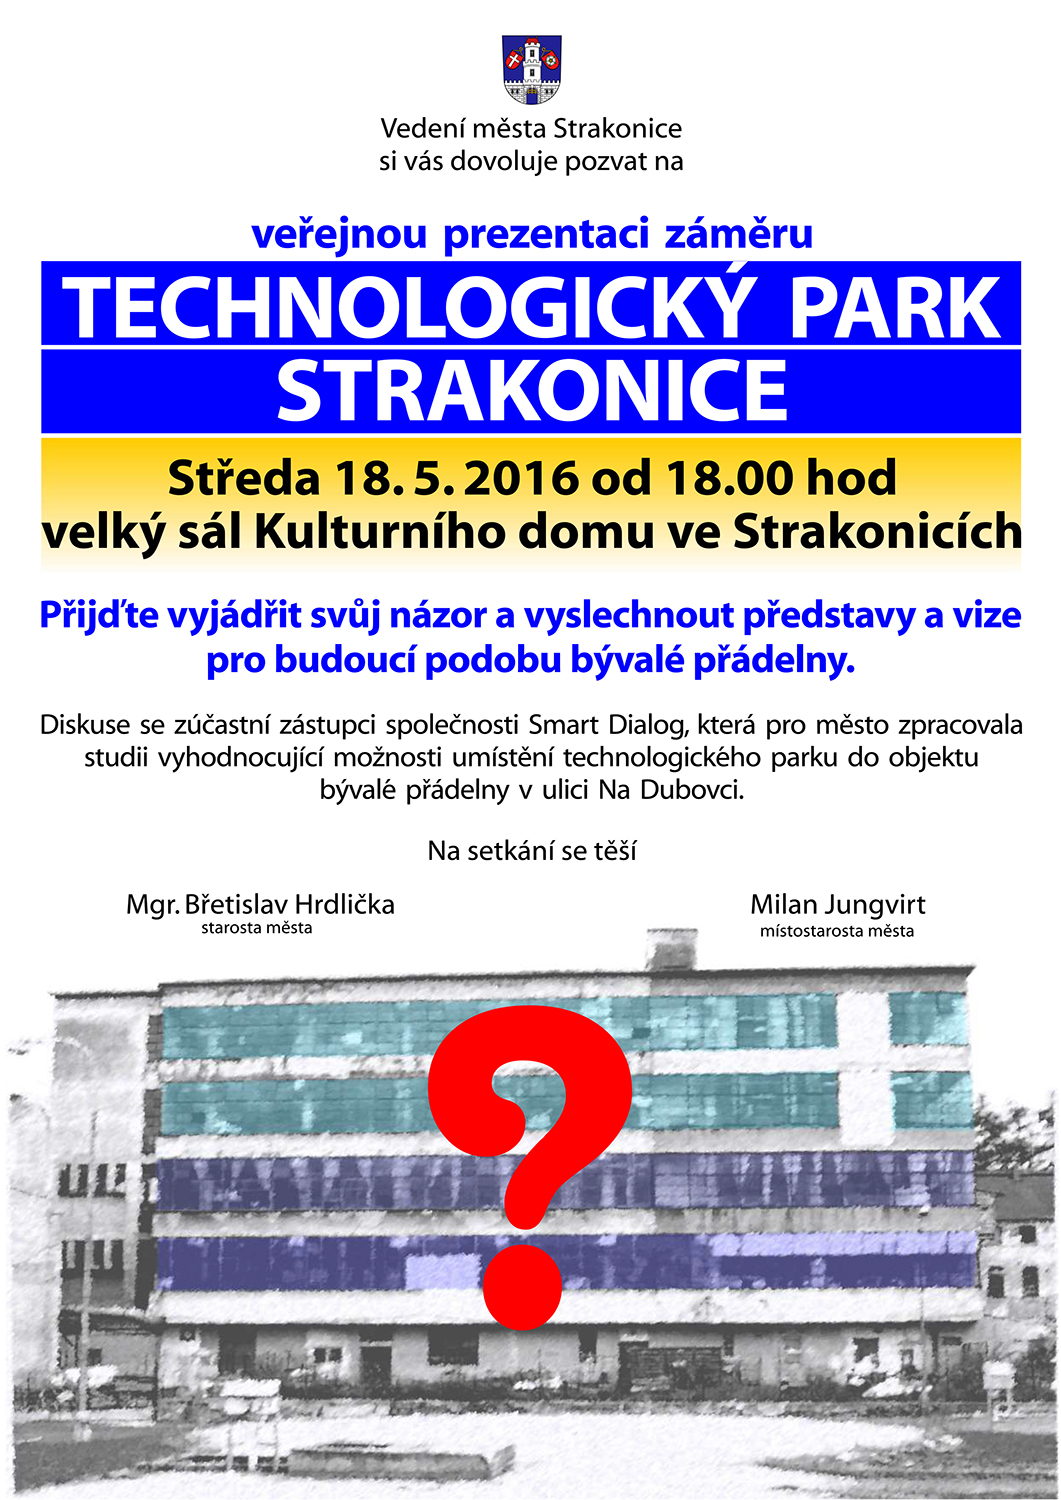 Oznámení o besedě „Technologický park Strakonicko“ v novém termínu 18.5.2016, oficiální leták města – beseda se i zde měla týkat pouze jednoho uvedeného tématu